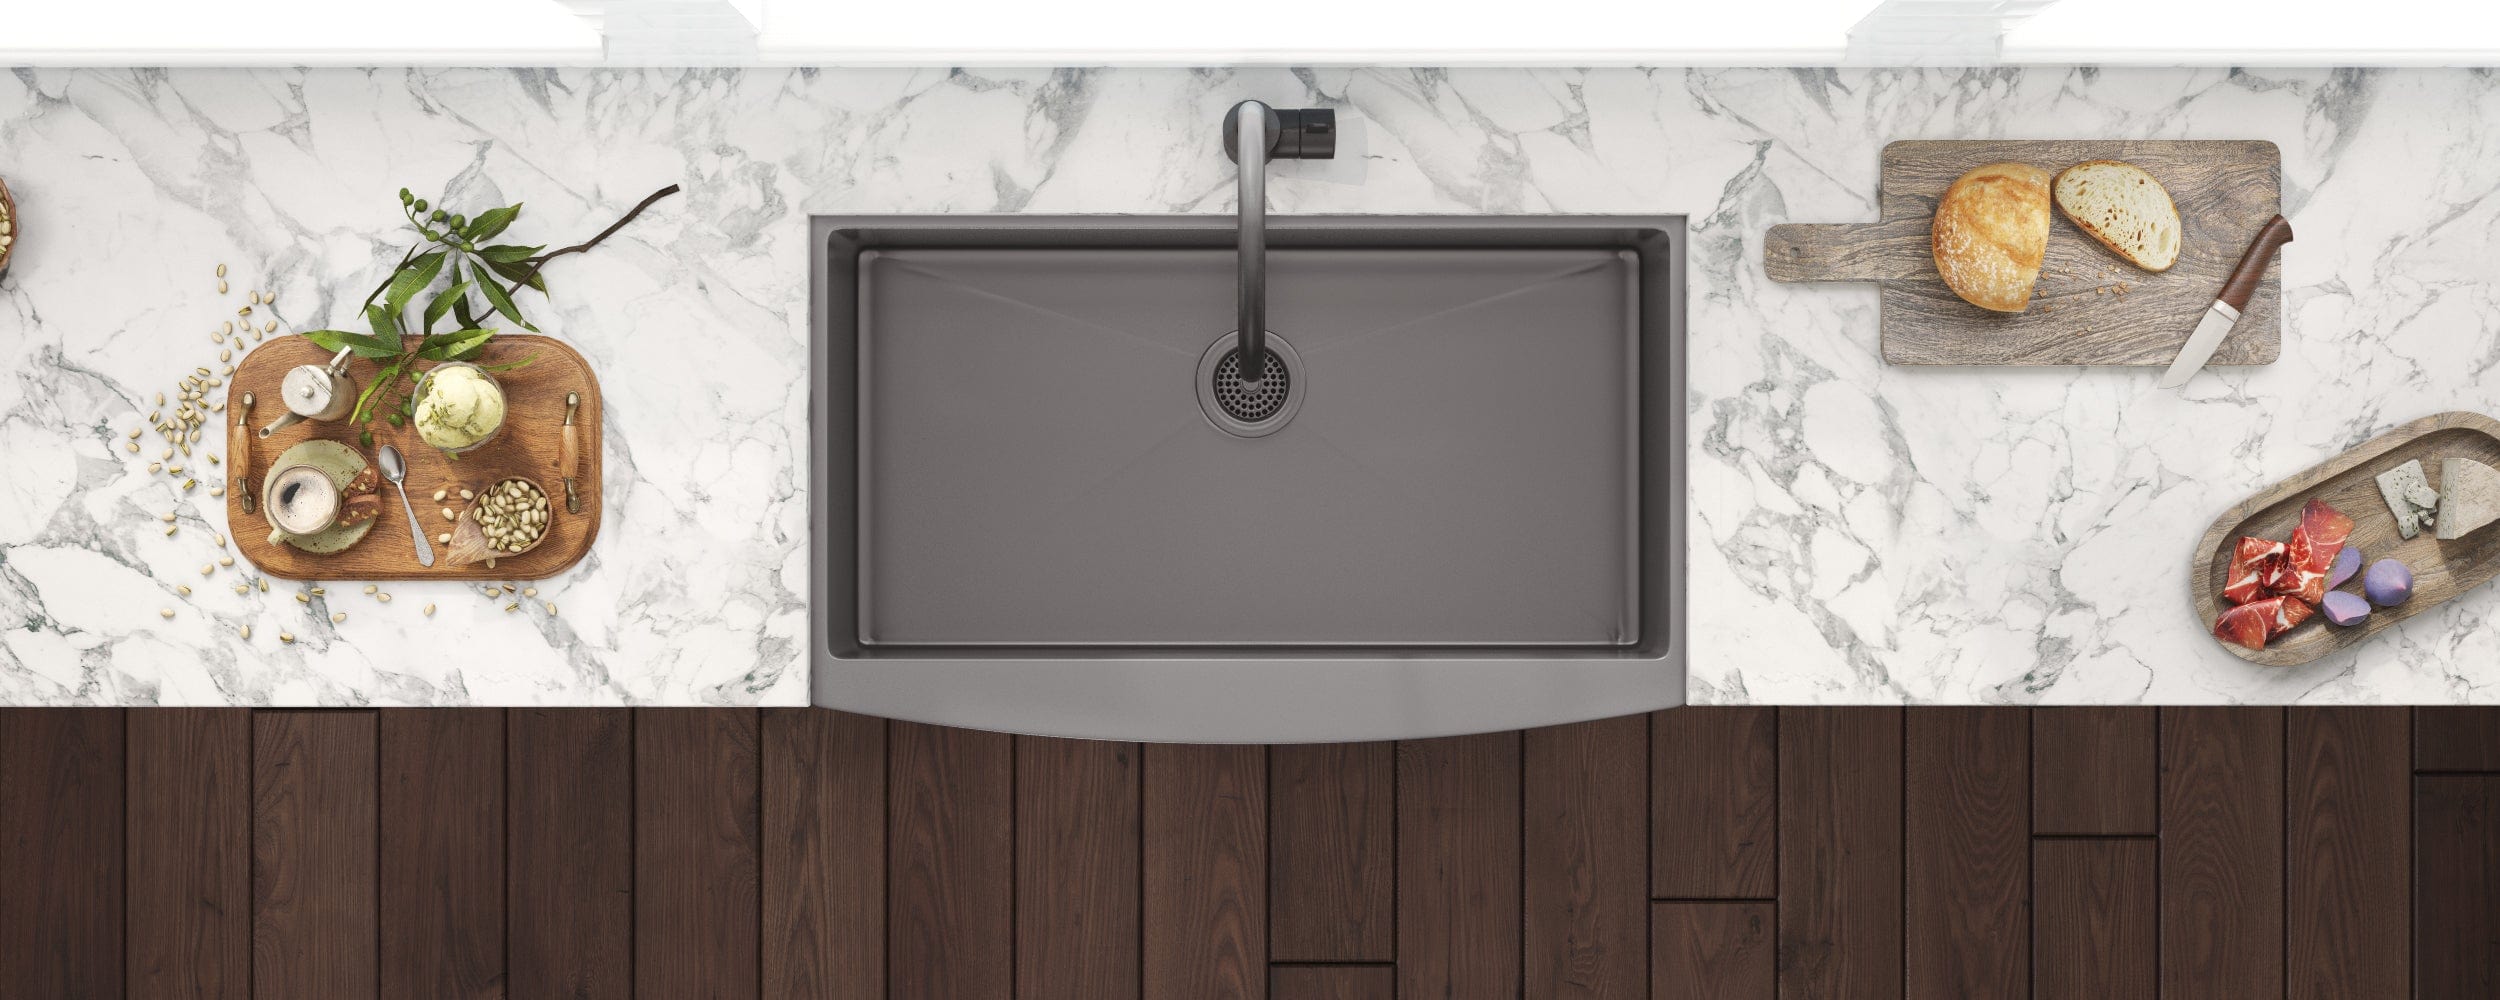 Ruvati Terraza 30" Stainless Steel Kitchen Sink RVH9660BL